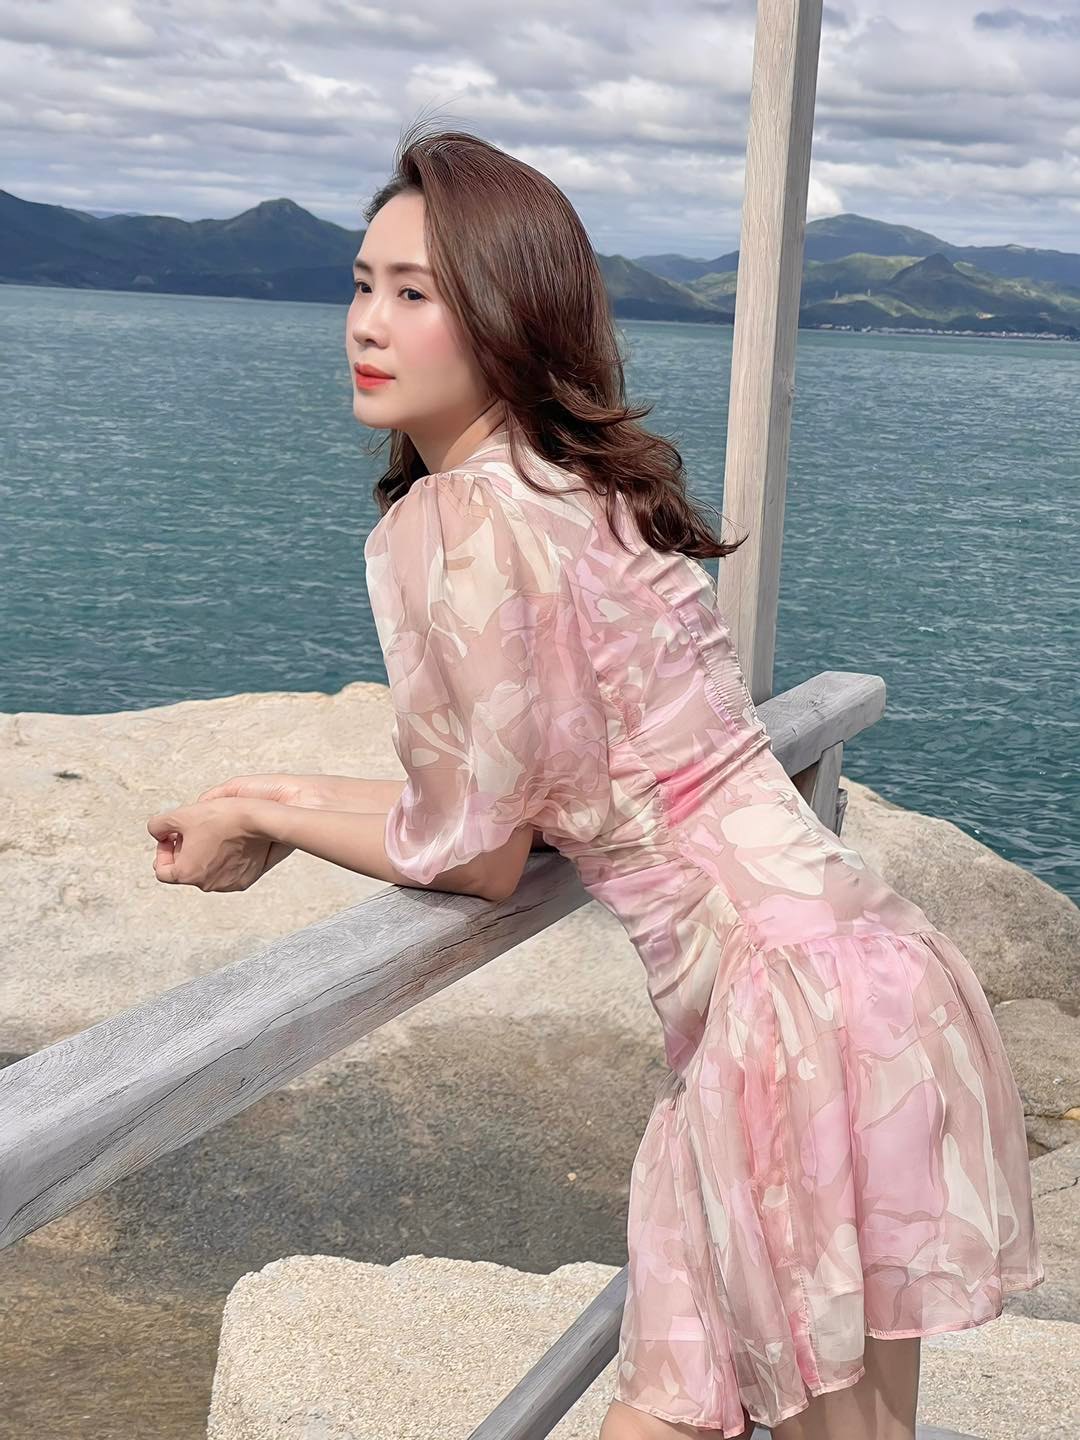 Hồng Diễm diện váy xẻ cao, khoe sắc vóc không thua kém hoa hậu - 5